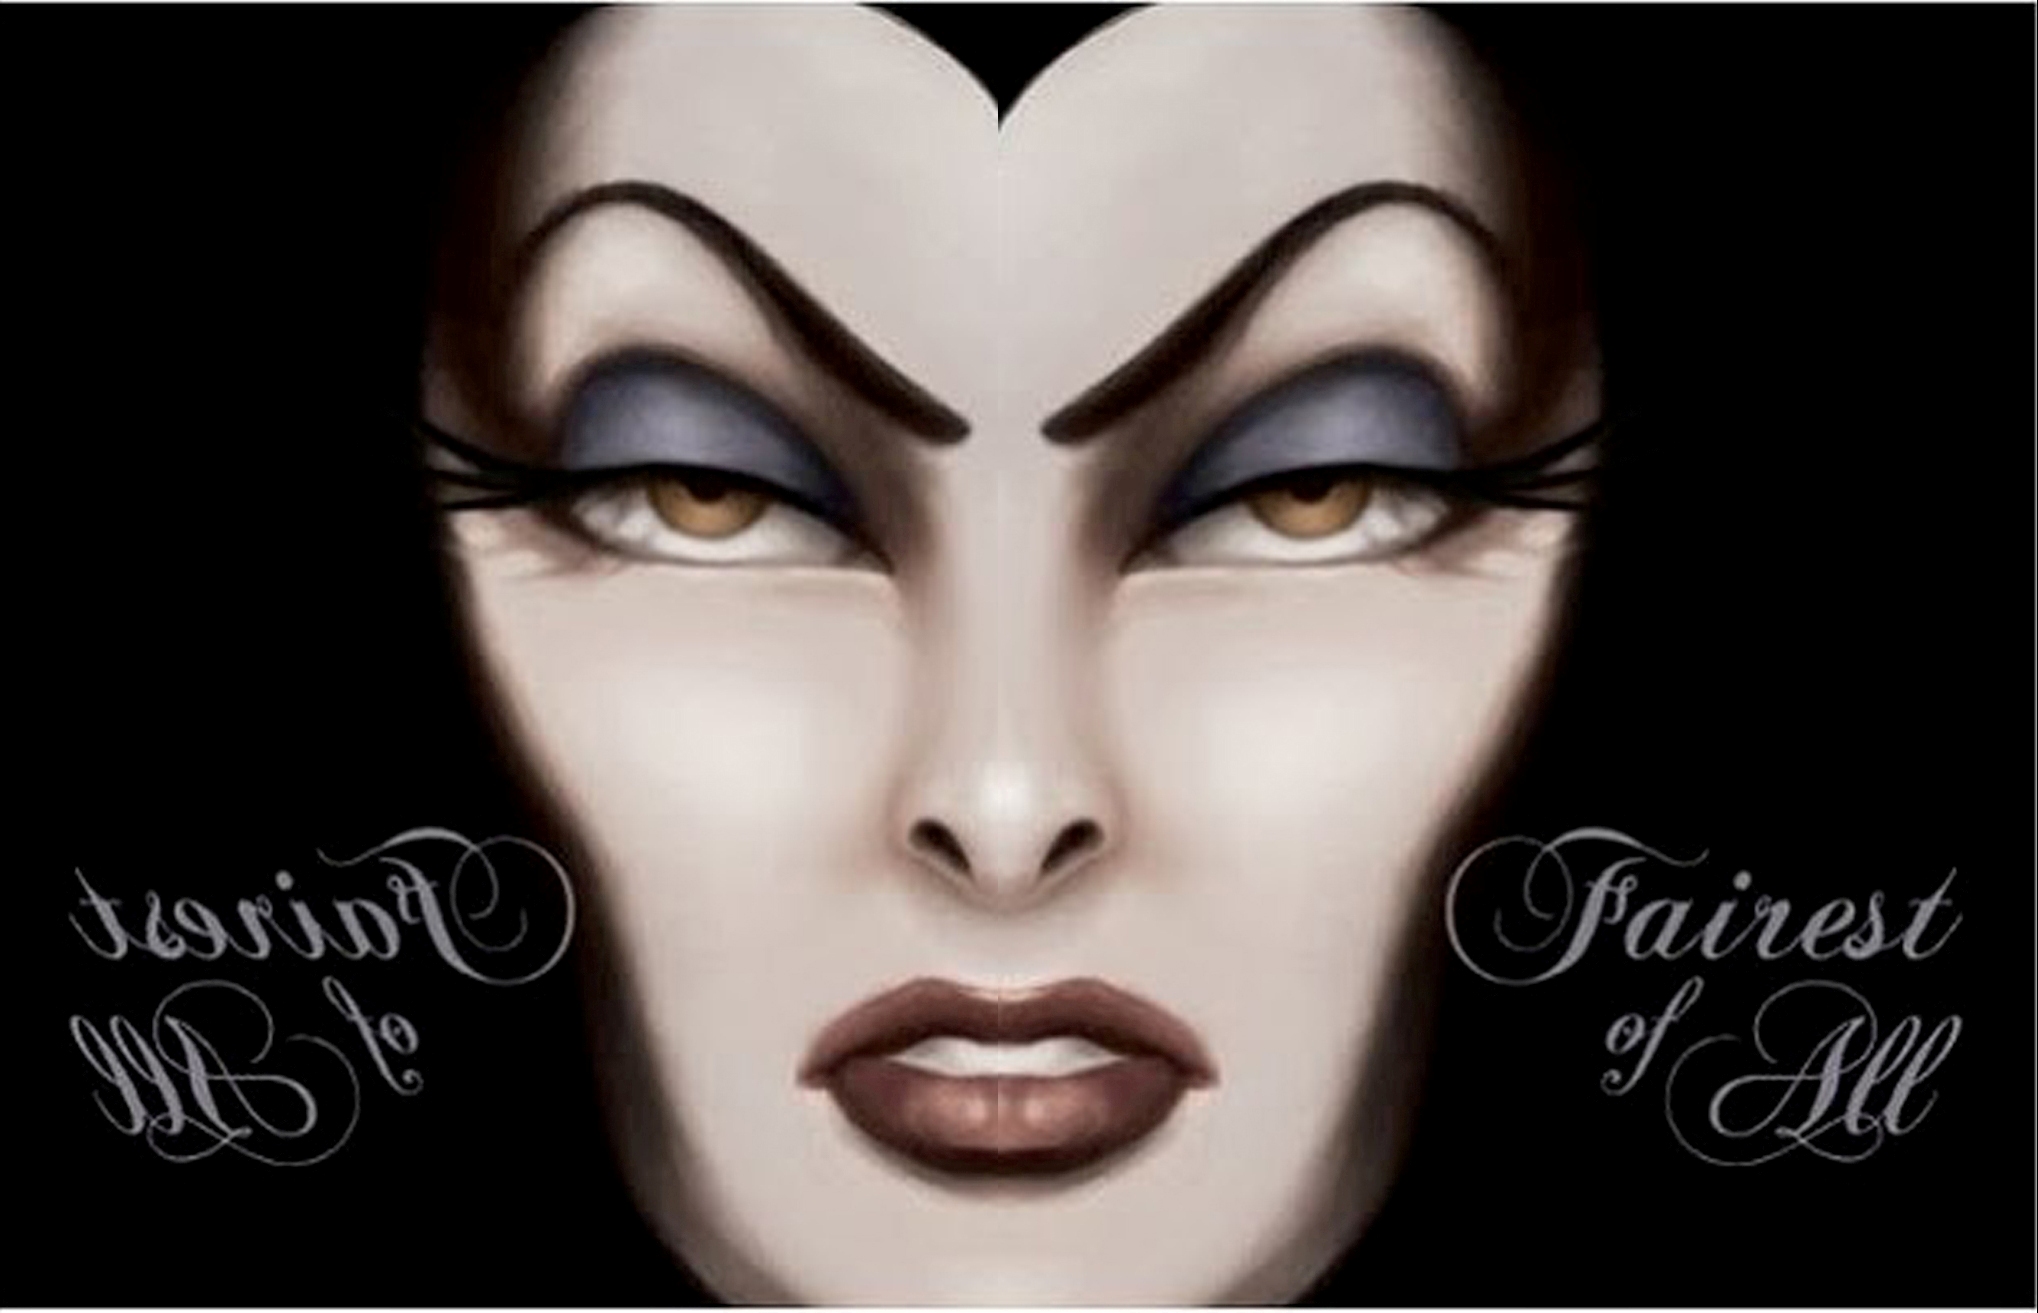 Evil Queen/ Wicked Queen